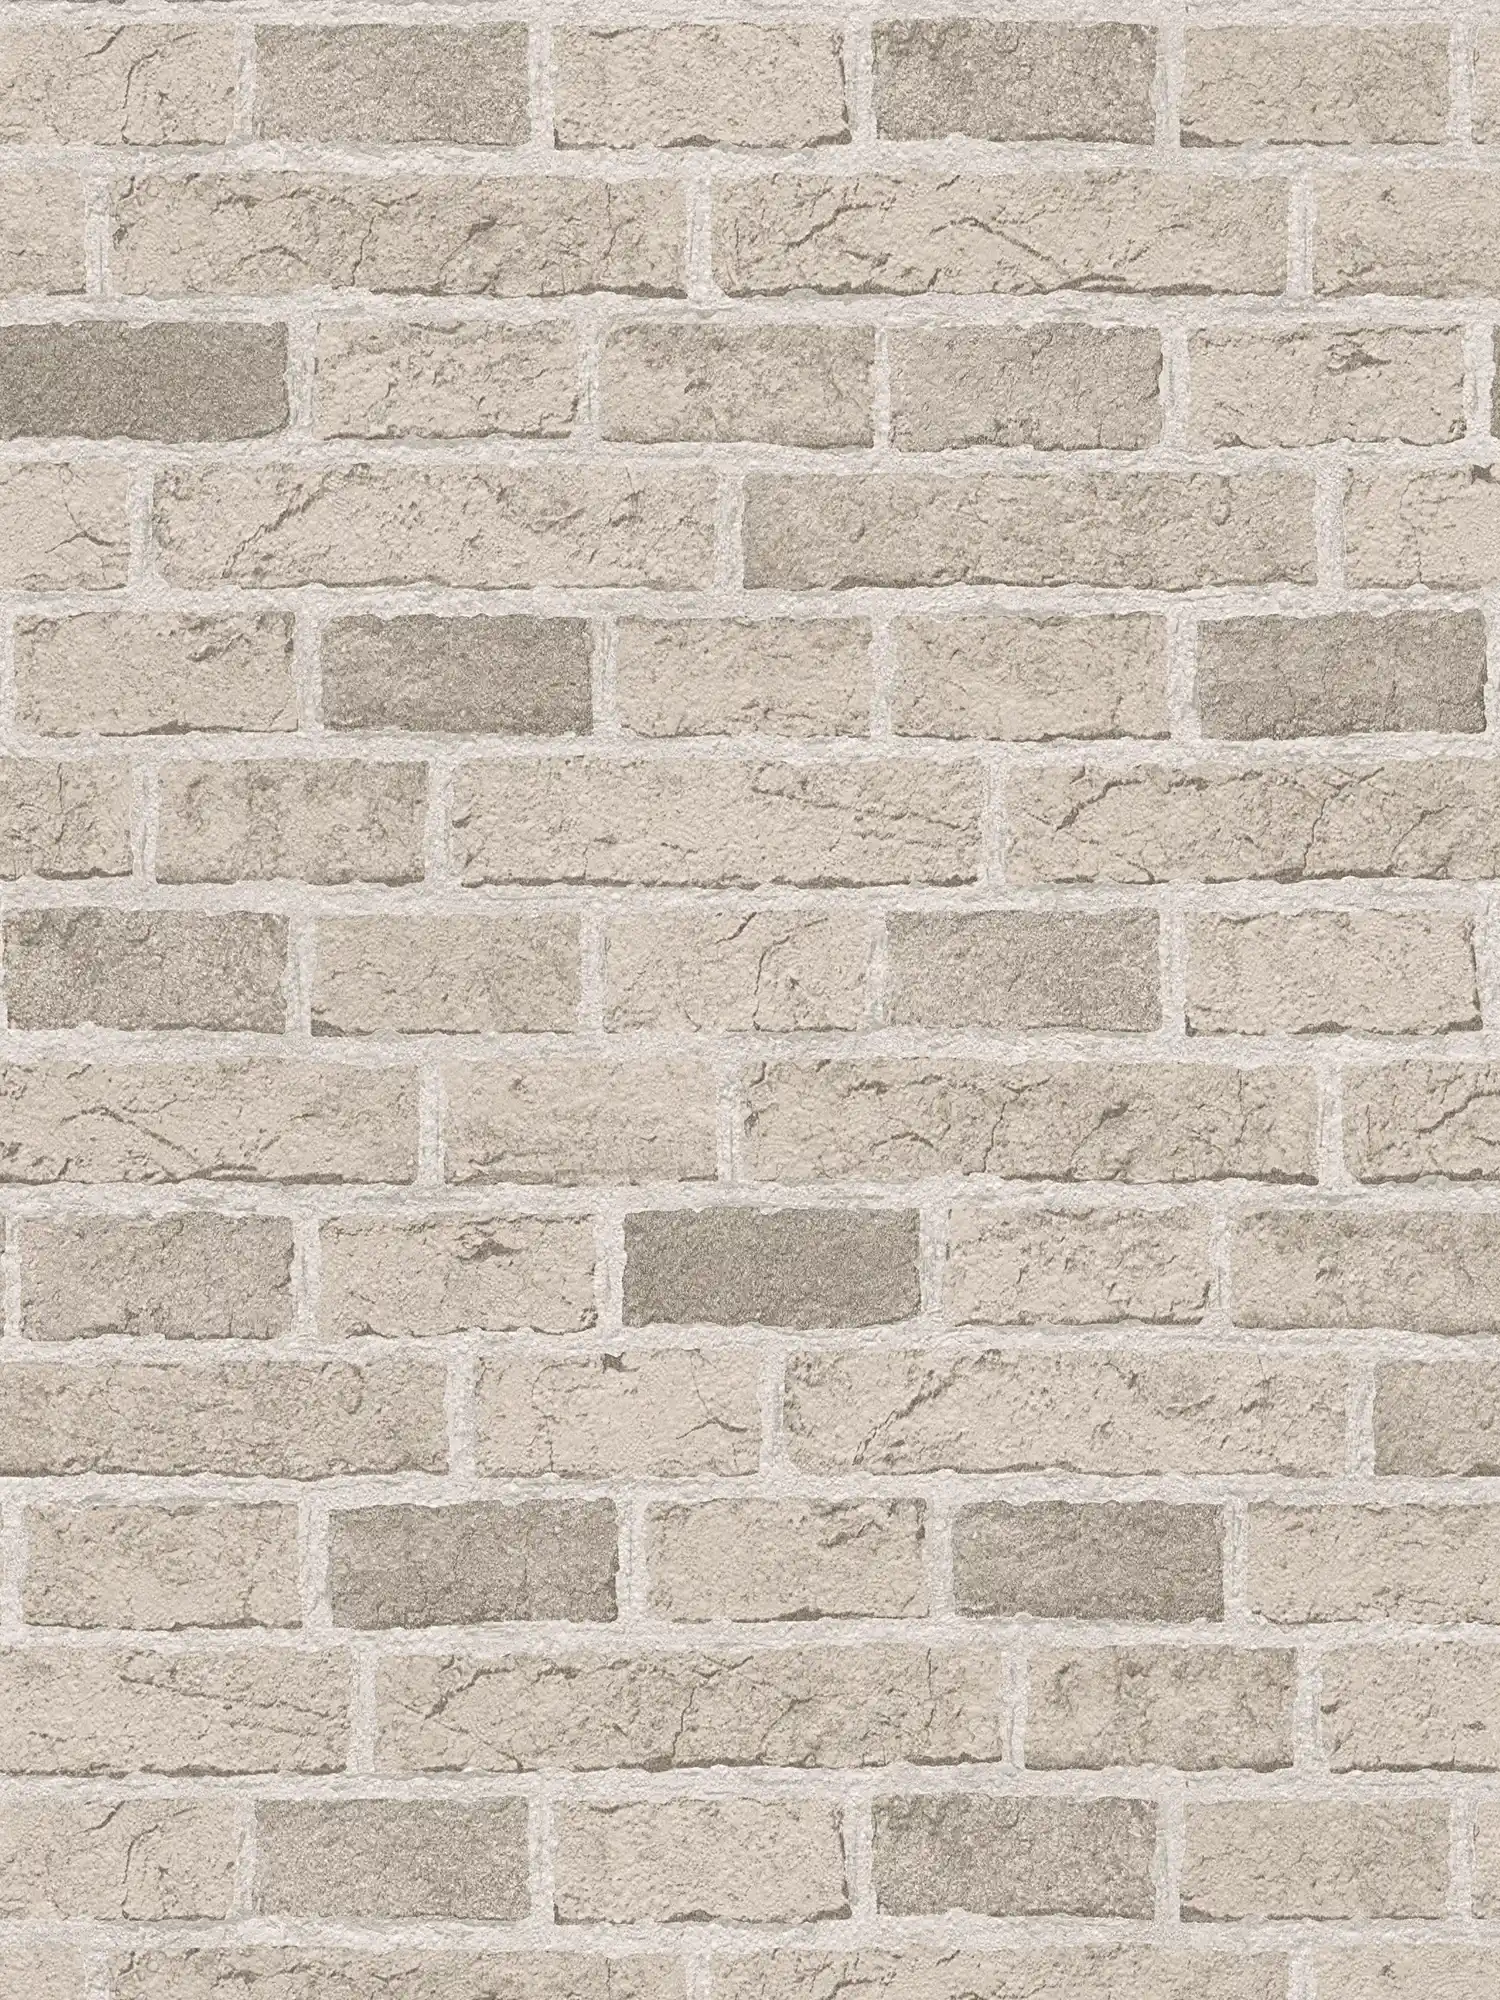 Carta da parati in pietra con muro di mattoni rustico e dettagliato - Crema, beige
